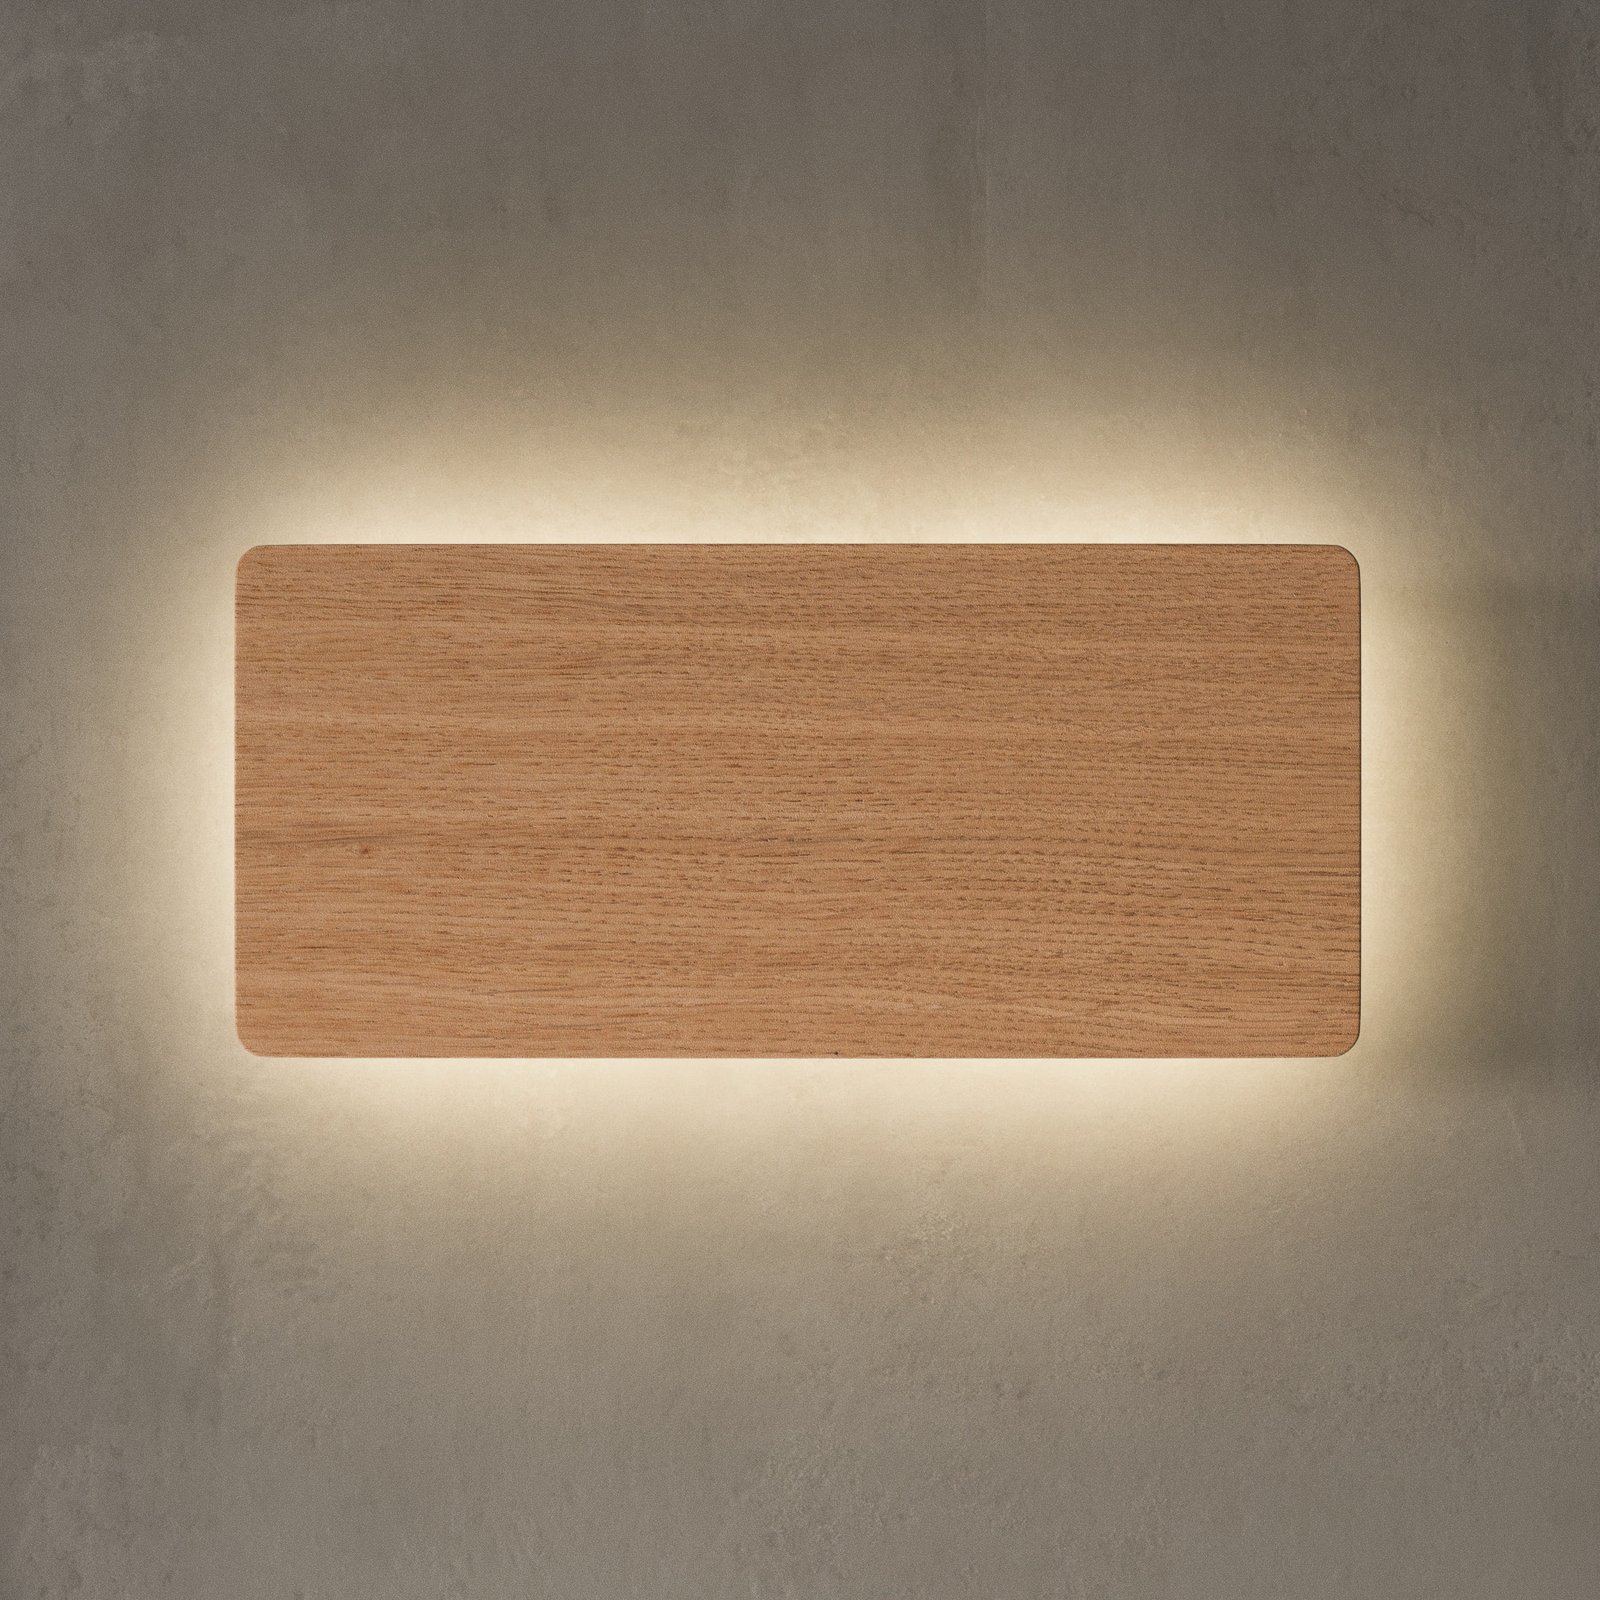 Envostar Tavola nástenné svetlo, dub, 35x16 cm